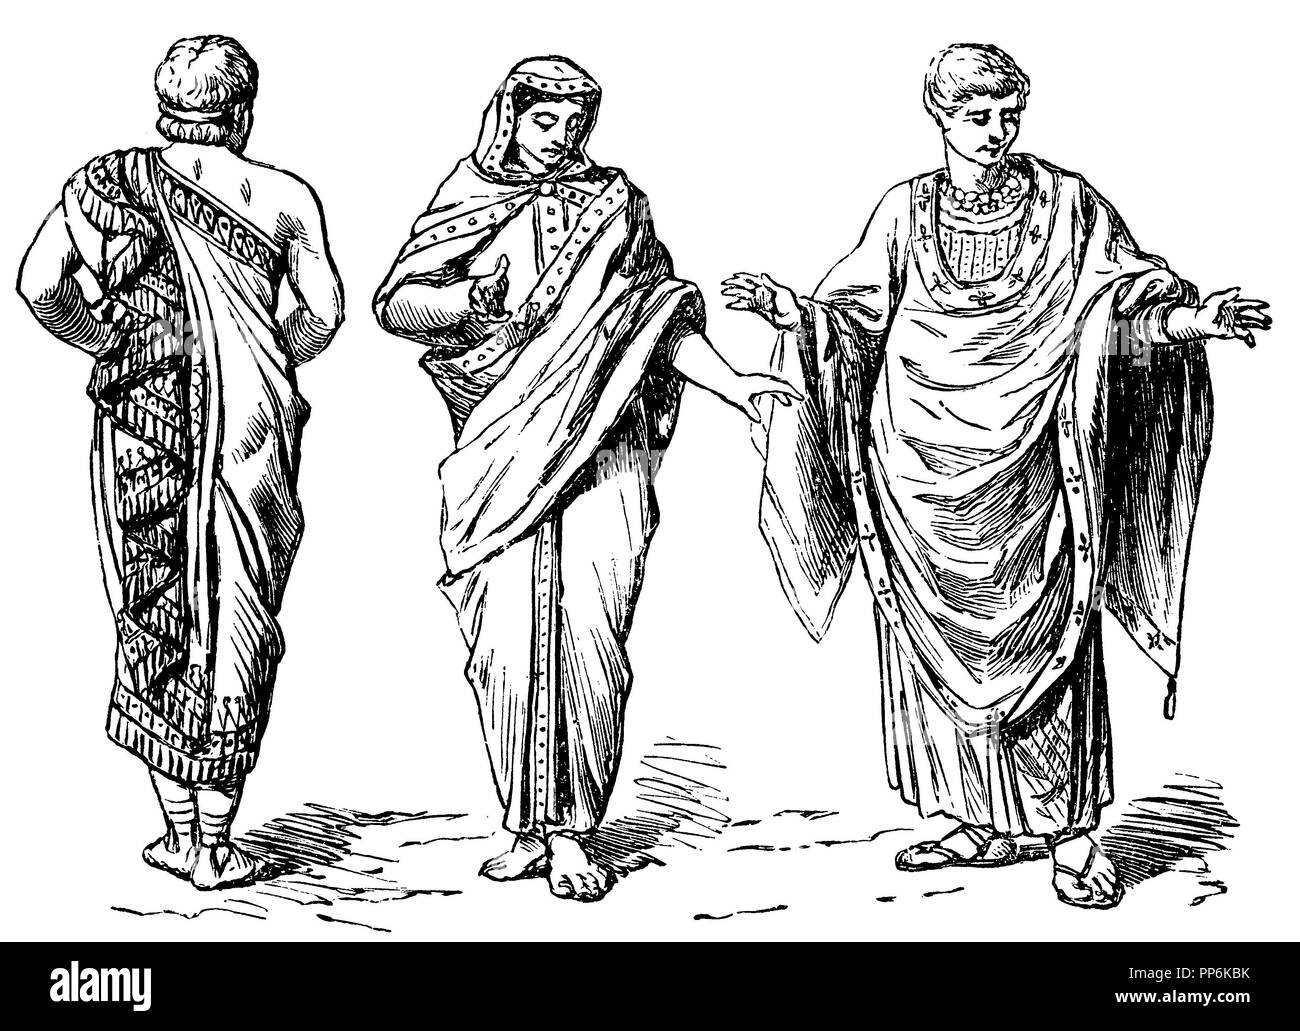 Gauche : Tebenna, étrusque, au milieu et à droite : élégant costume, anonym 1896 Banque D'Images